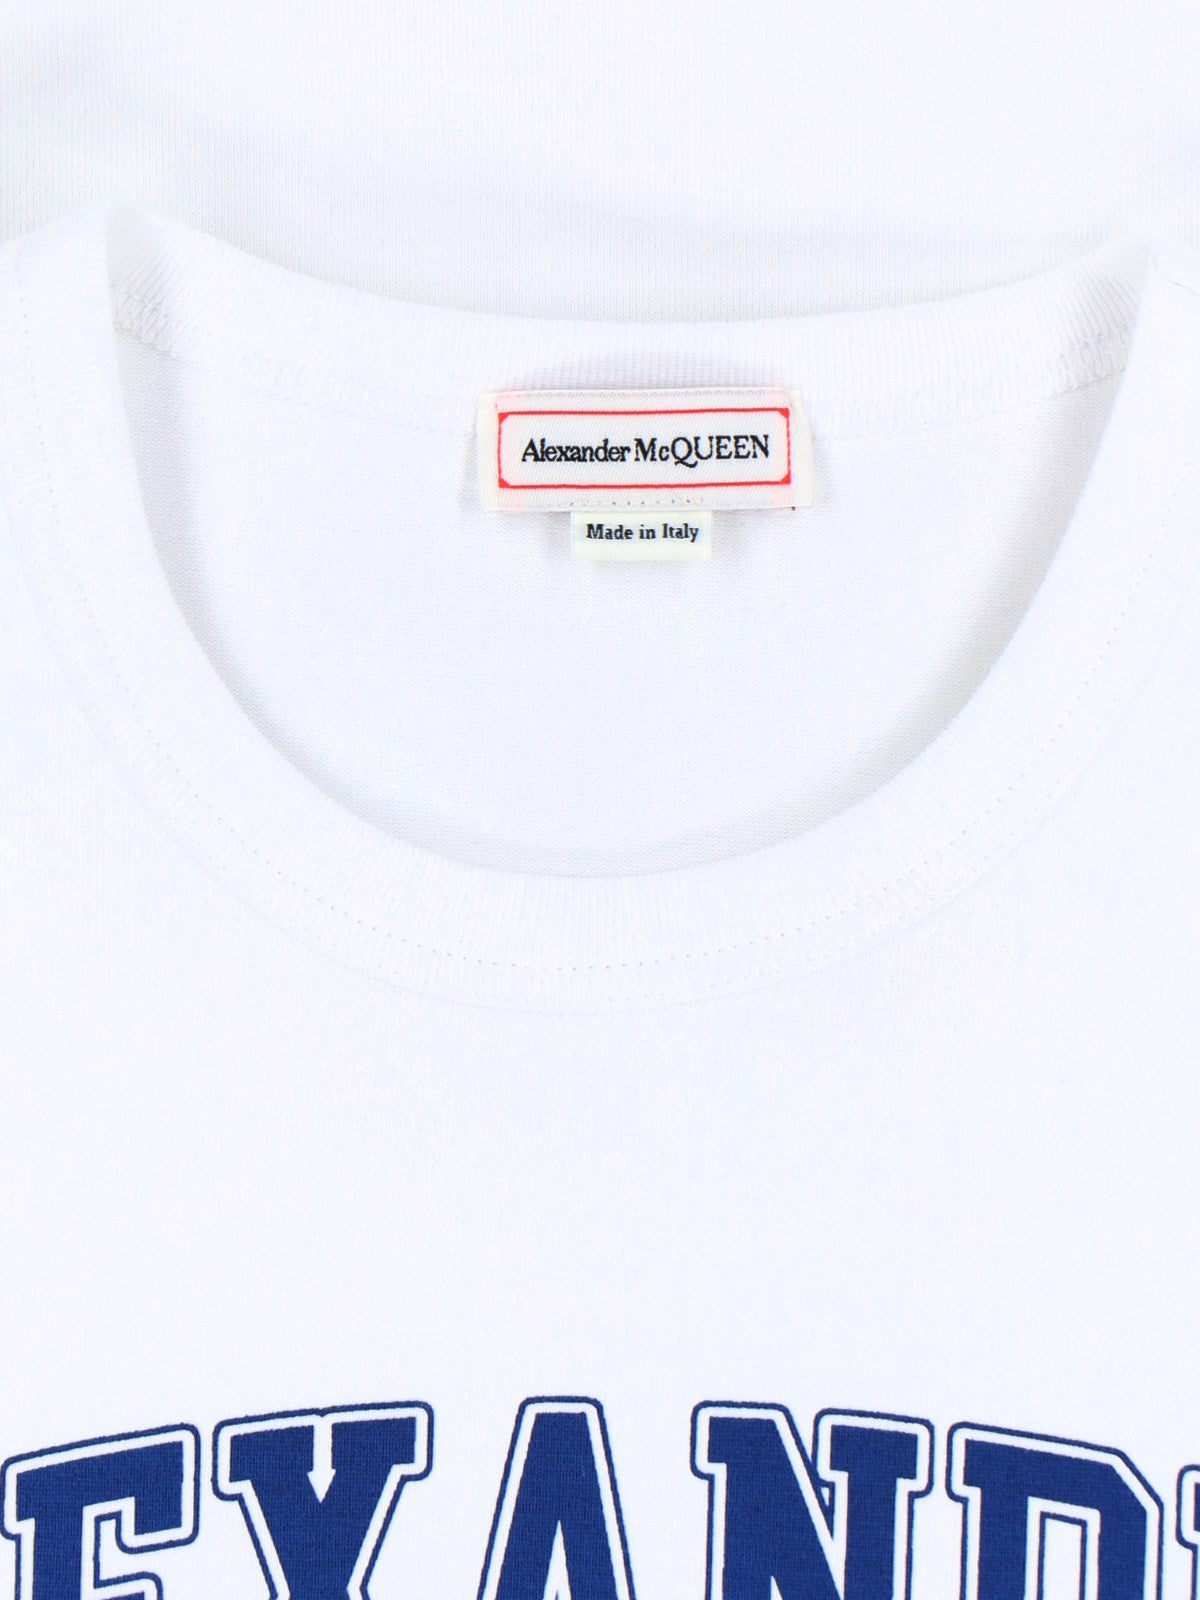 Alexander McQueen T-Shirt "varsity"-t-shirt-Alexander McQueen-T-shirt "varsity" Alexander McQueen, in cotone bianco, girocollo, maniche corte, maxi stampa logo e teschio blu fronte, orlo dritto.-Dresso